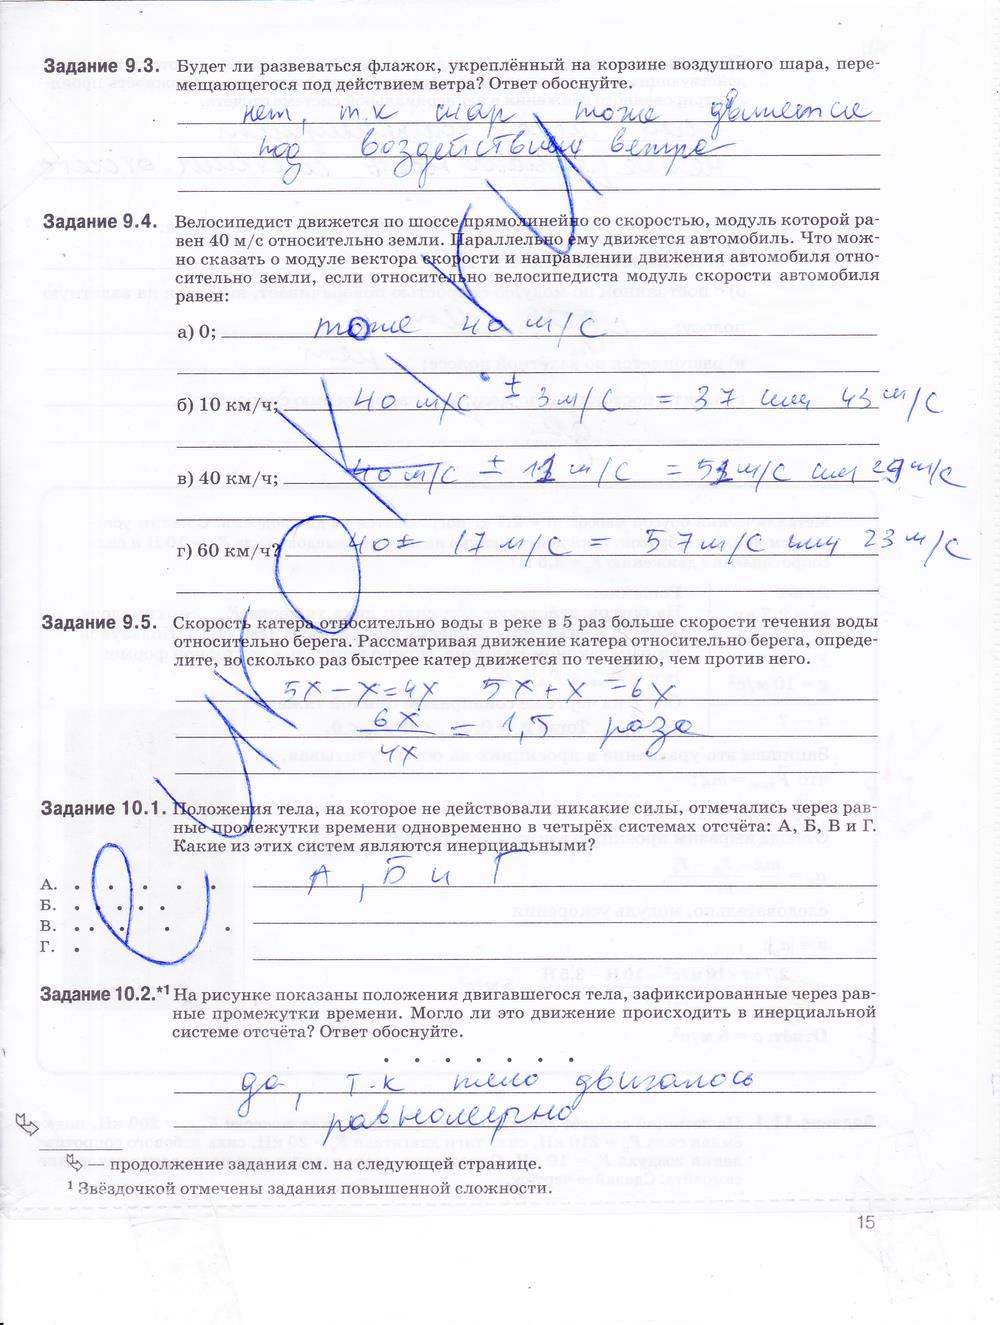 гдз 9 класс рабочая тетрадь страница 15 физика Гутник, Власова